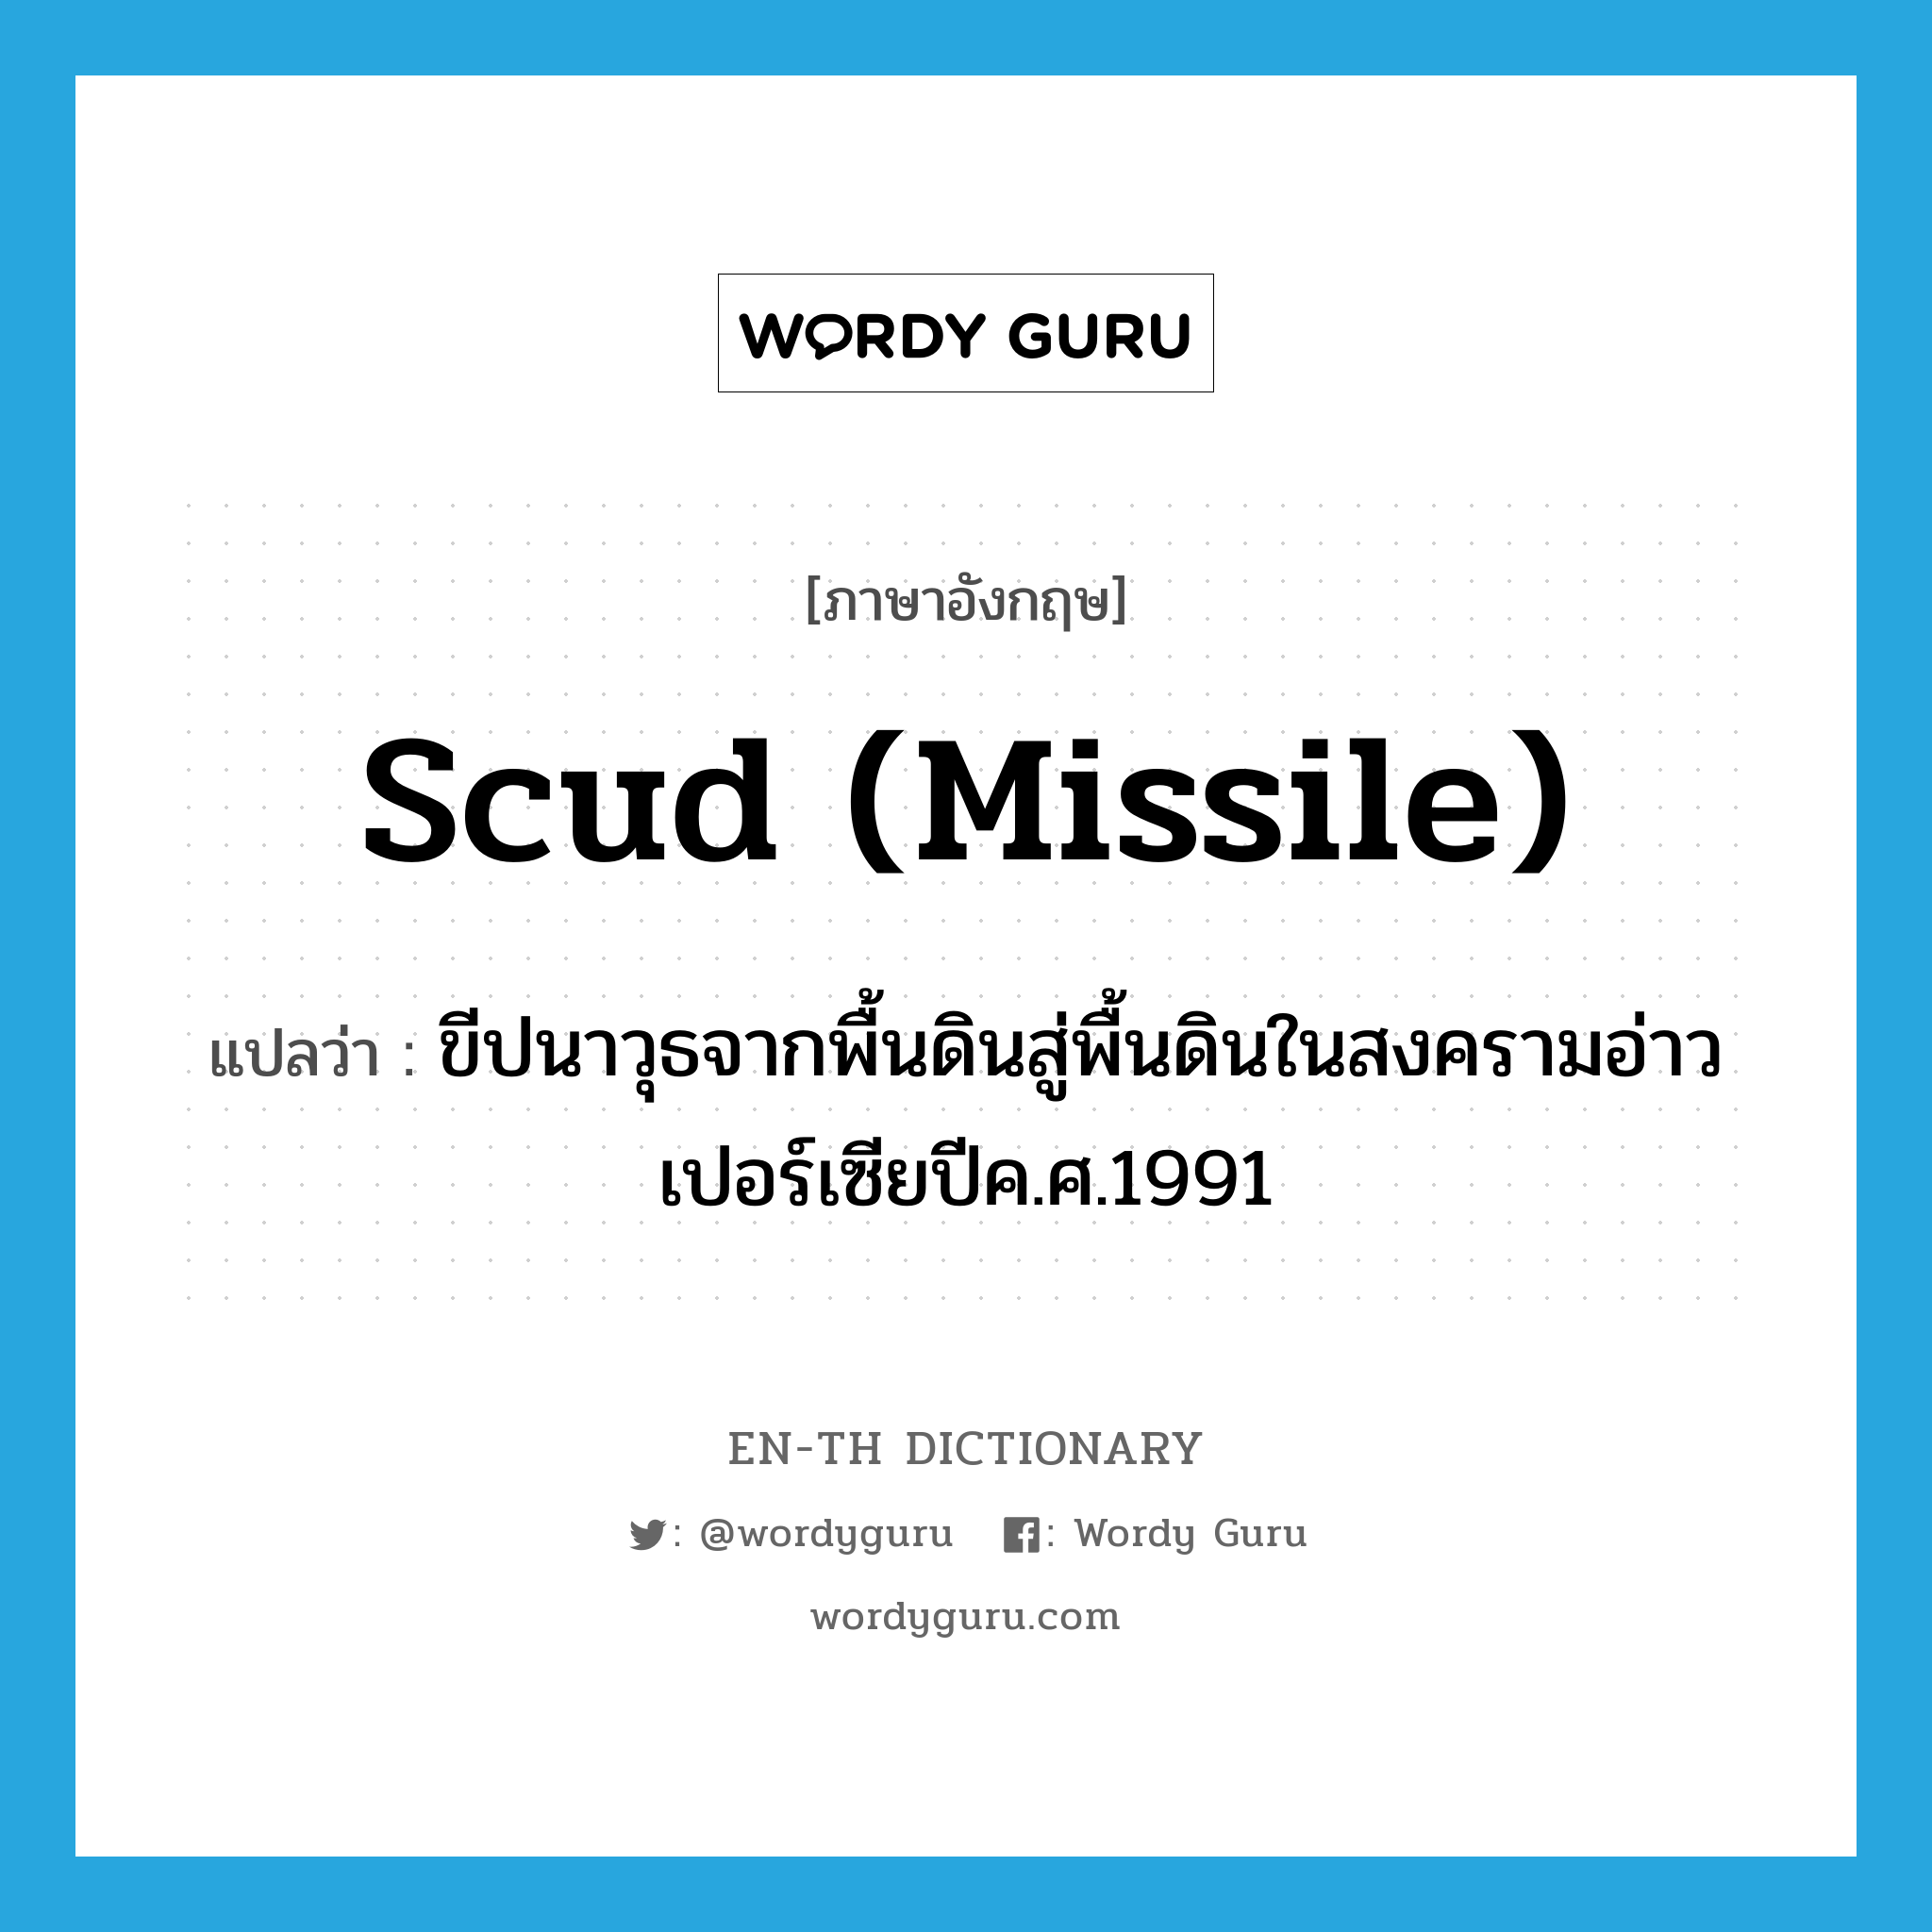 Scud (missile) แปลว่า?, คำศัพท์ภาษาอังกฤษ Scud (missile) แปลว่า ขีปนาวุธจากพื้นดินสู่พื้นดินในสงครามอ่าวเปอร์เซียปีค.ศ.1991 ประเภท N หมวด N